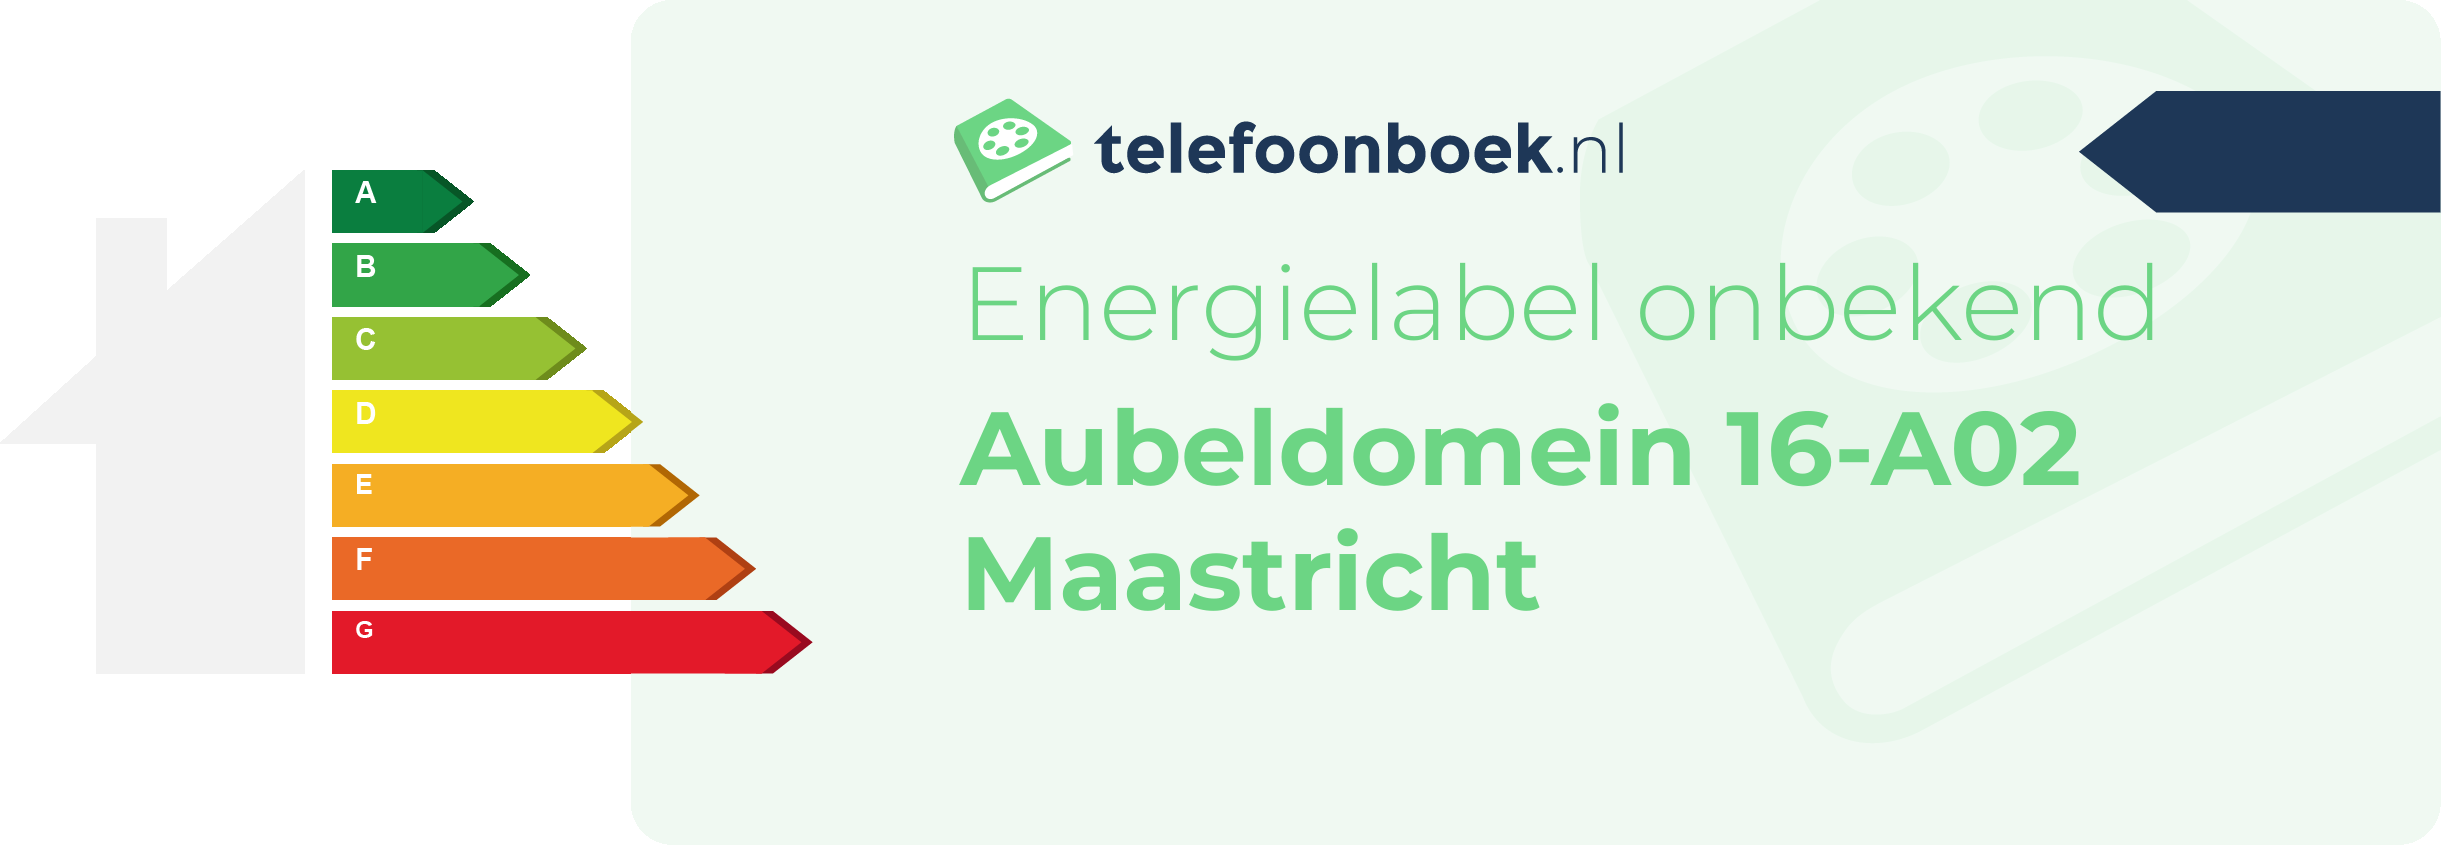 Energielabel Aubeldomein 16-A02 Maastricht